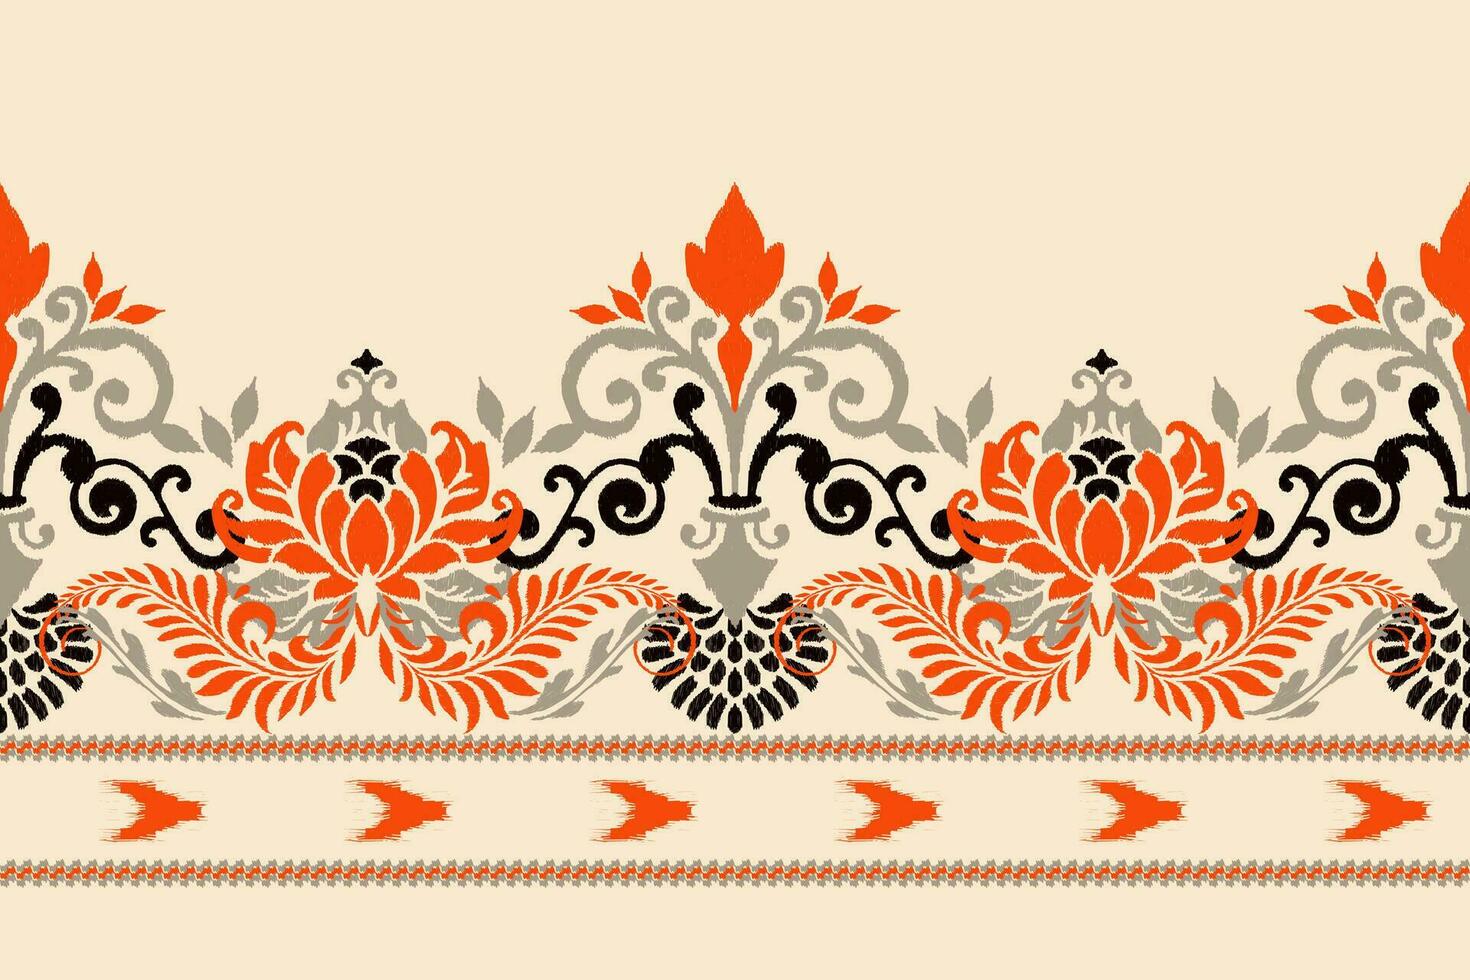 ikat floreale paisley ricamo su crema sfondo.ikat etnico orientale modello tradizionale.azteco stile astratto vettore illustrazione.disegno per trama, tessuto, abbigliamento, avvolgimento, decorazione, pareo, sciarpa